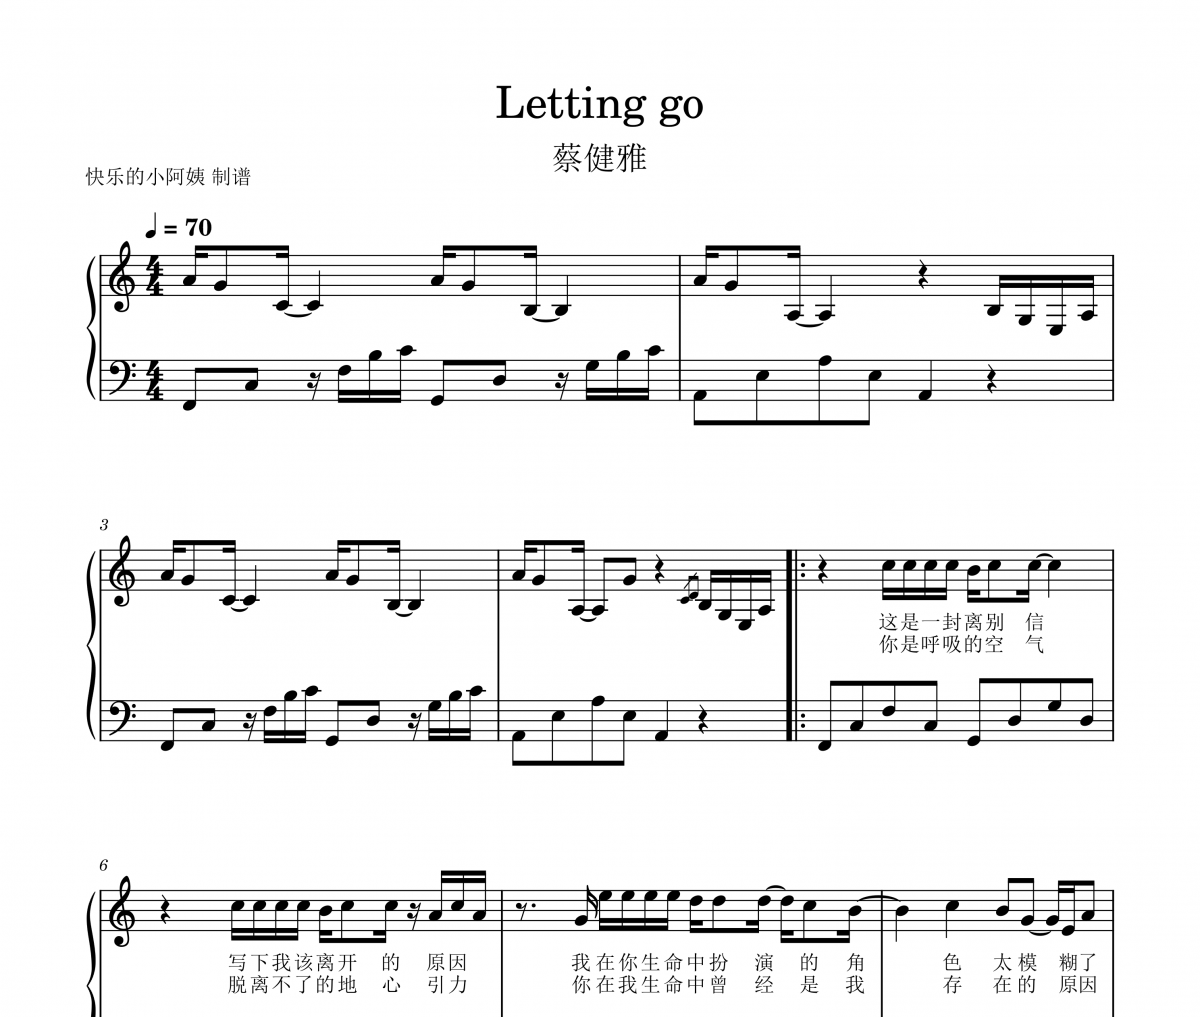 蔡健雅-Letting go-带歌词钢琴谱五线谱